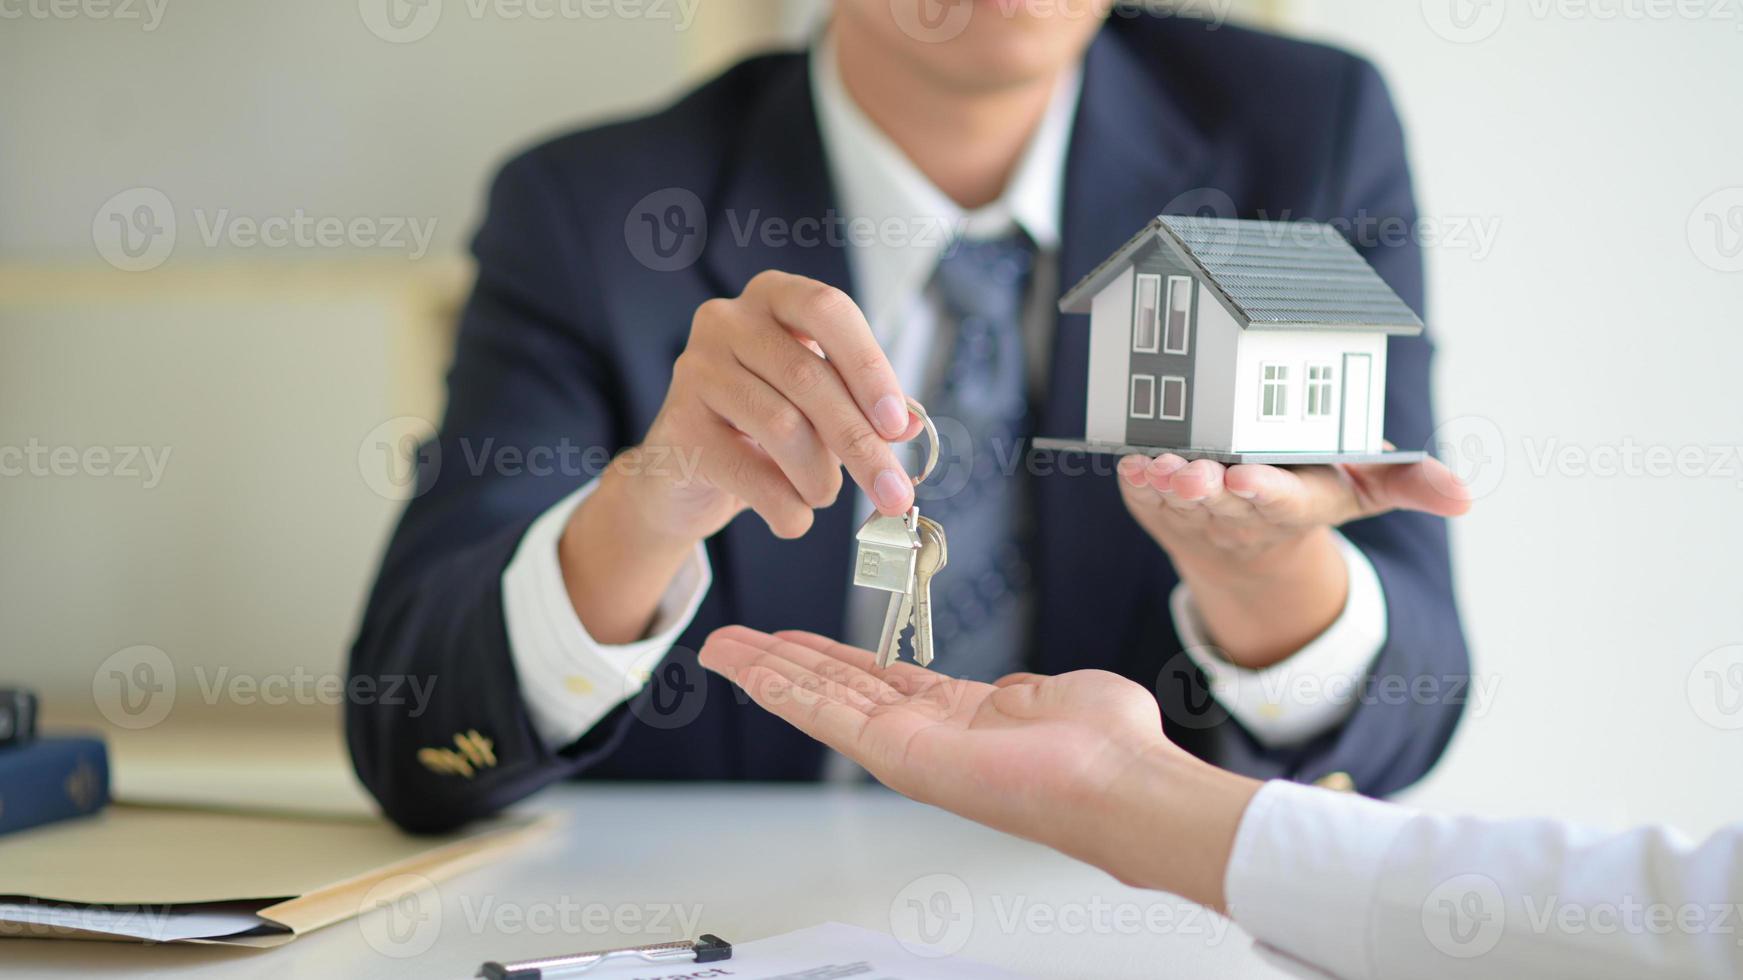 le courtier en vente de maison détient les clés et la maison modèle est remise aux clients, concept immobilier. photo